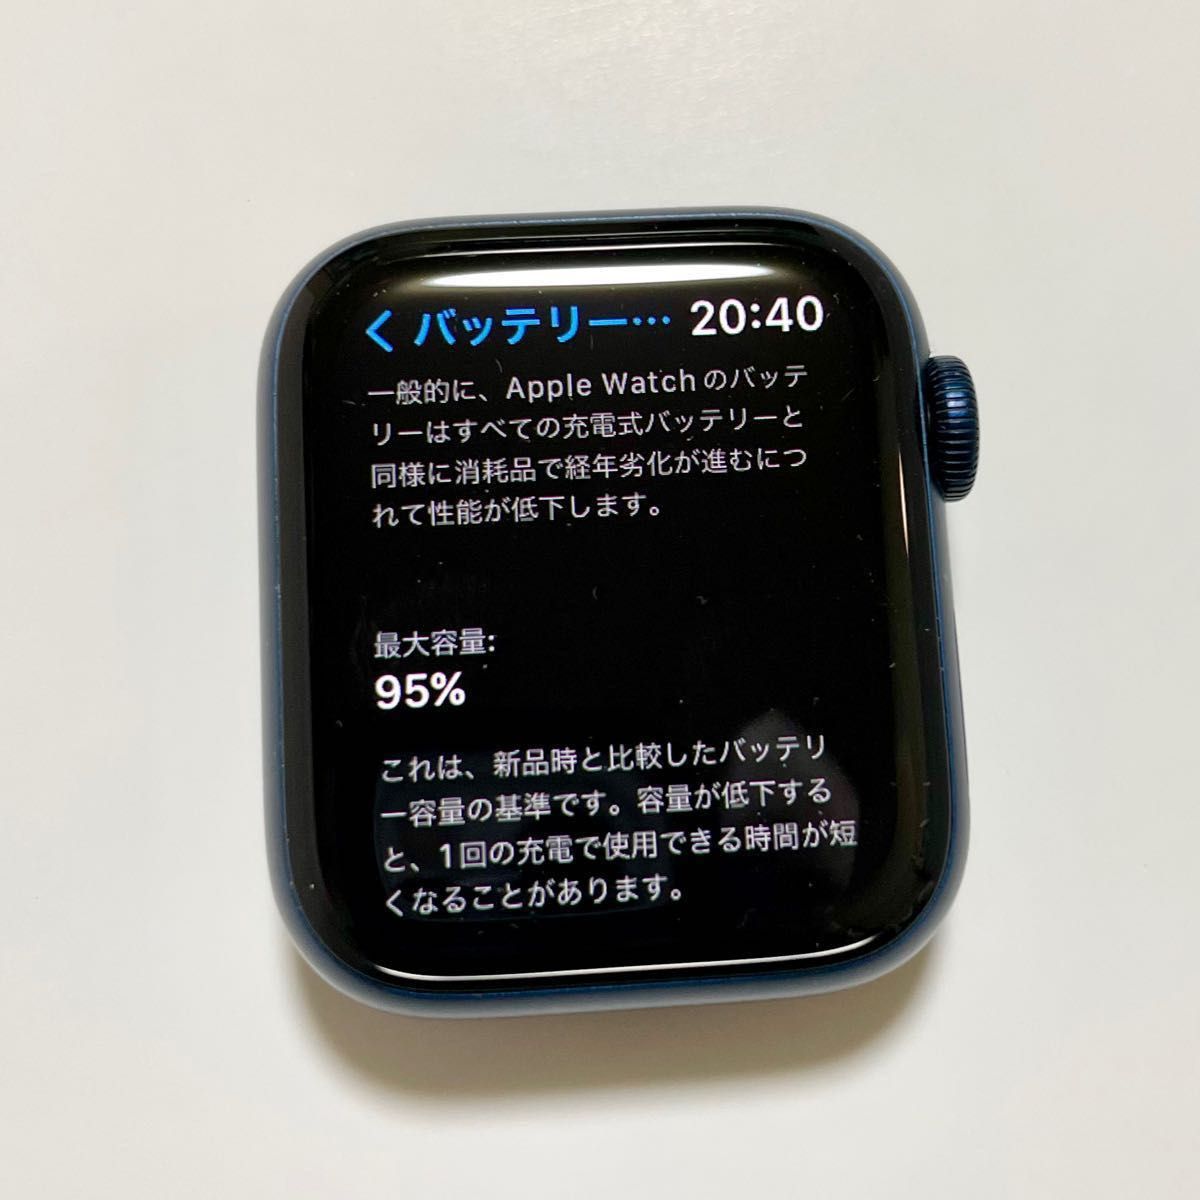 ☆大人気商品☆ 【※おまけ付き】Apple Watch Series 4(GPSモデル